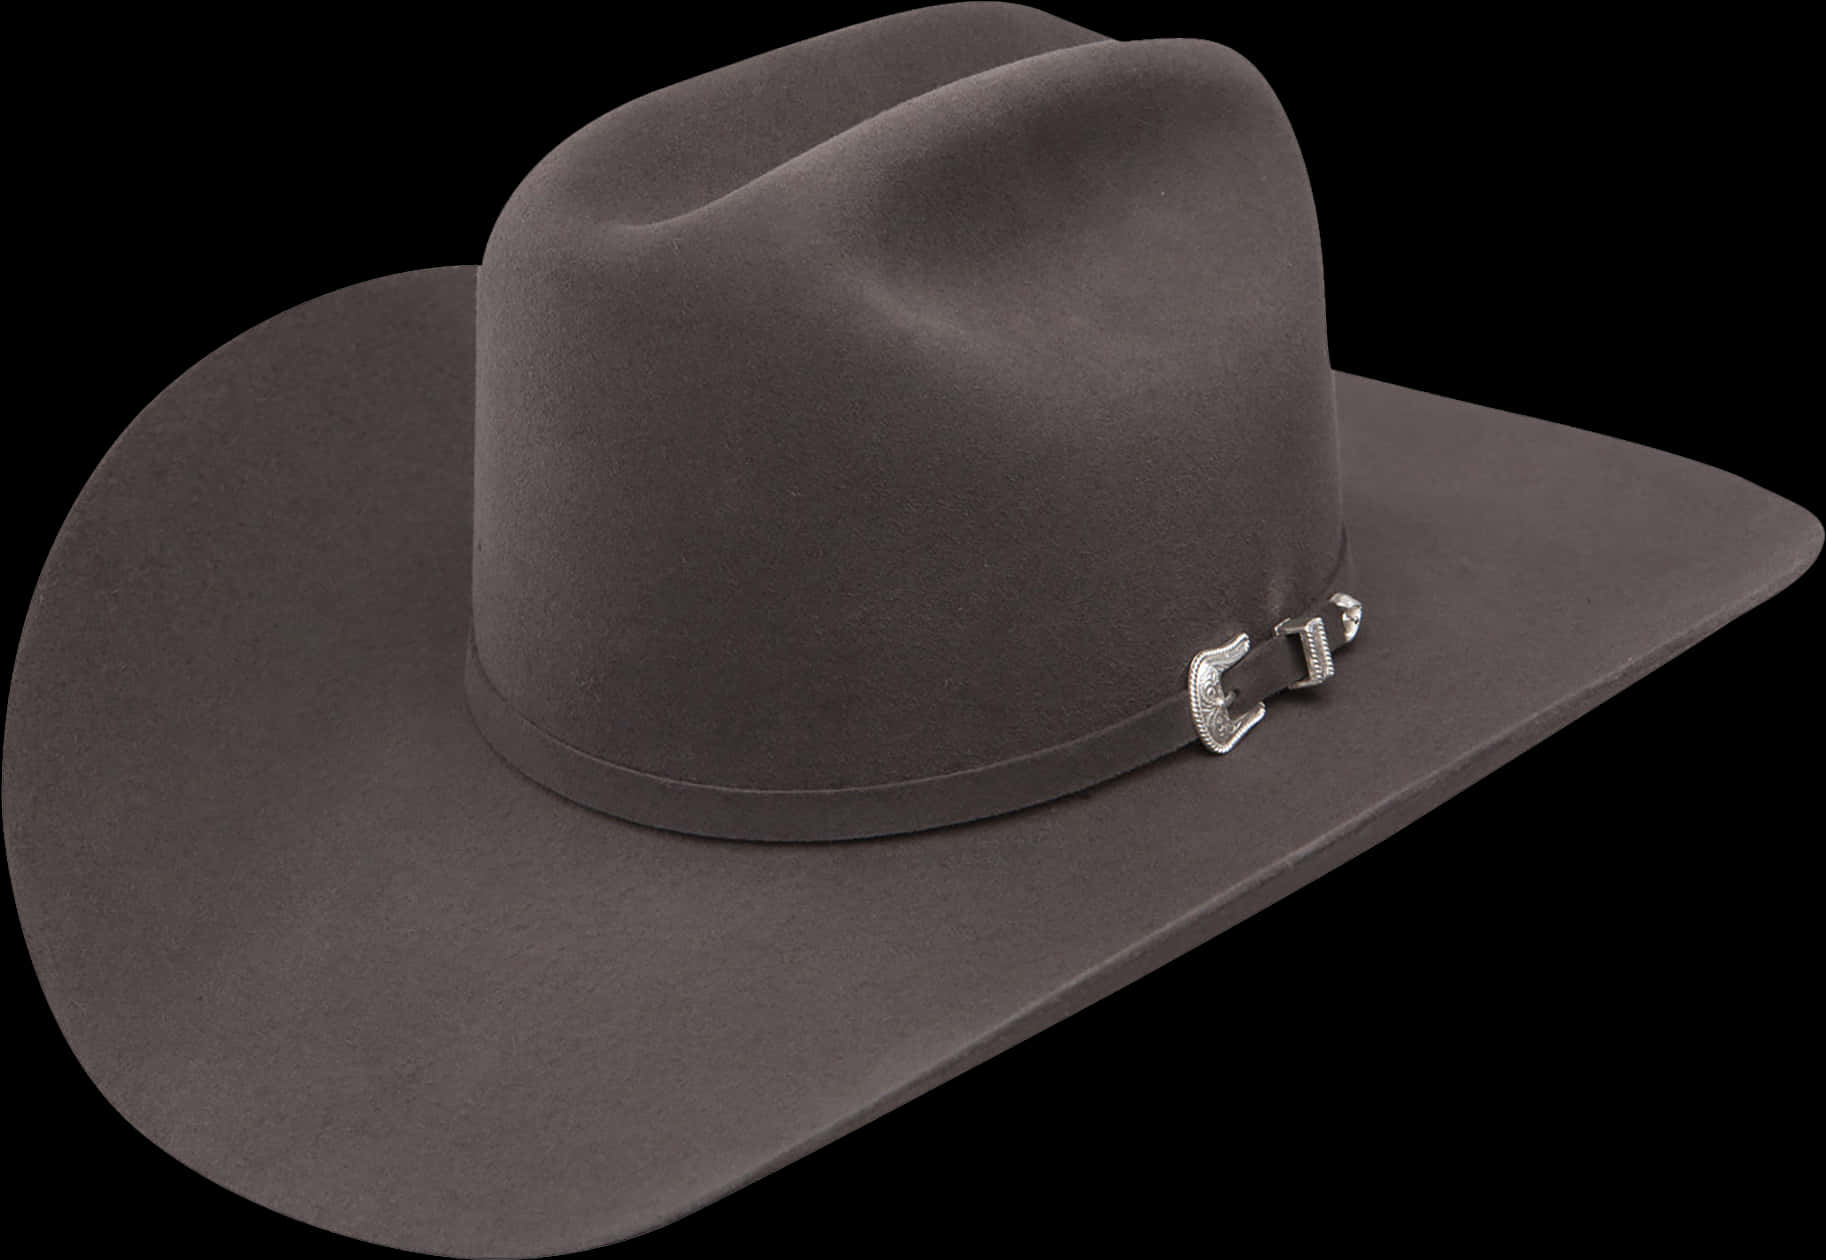 Classic Cowboy Hat Black PNG image